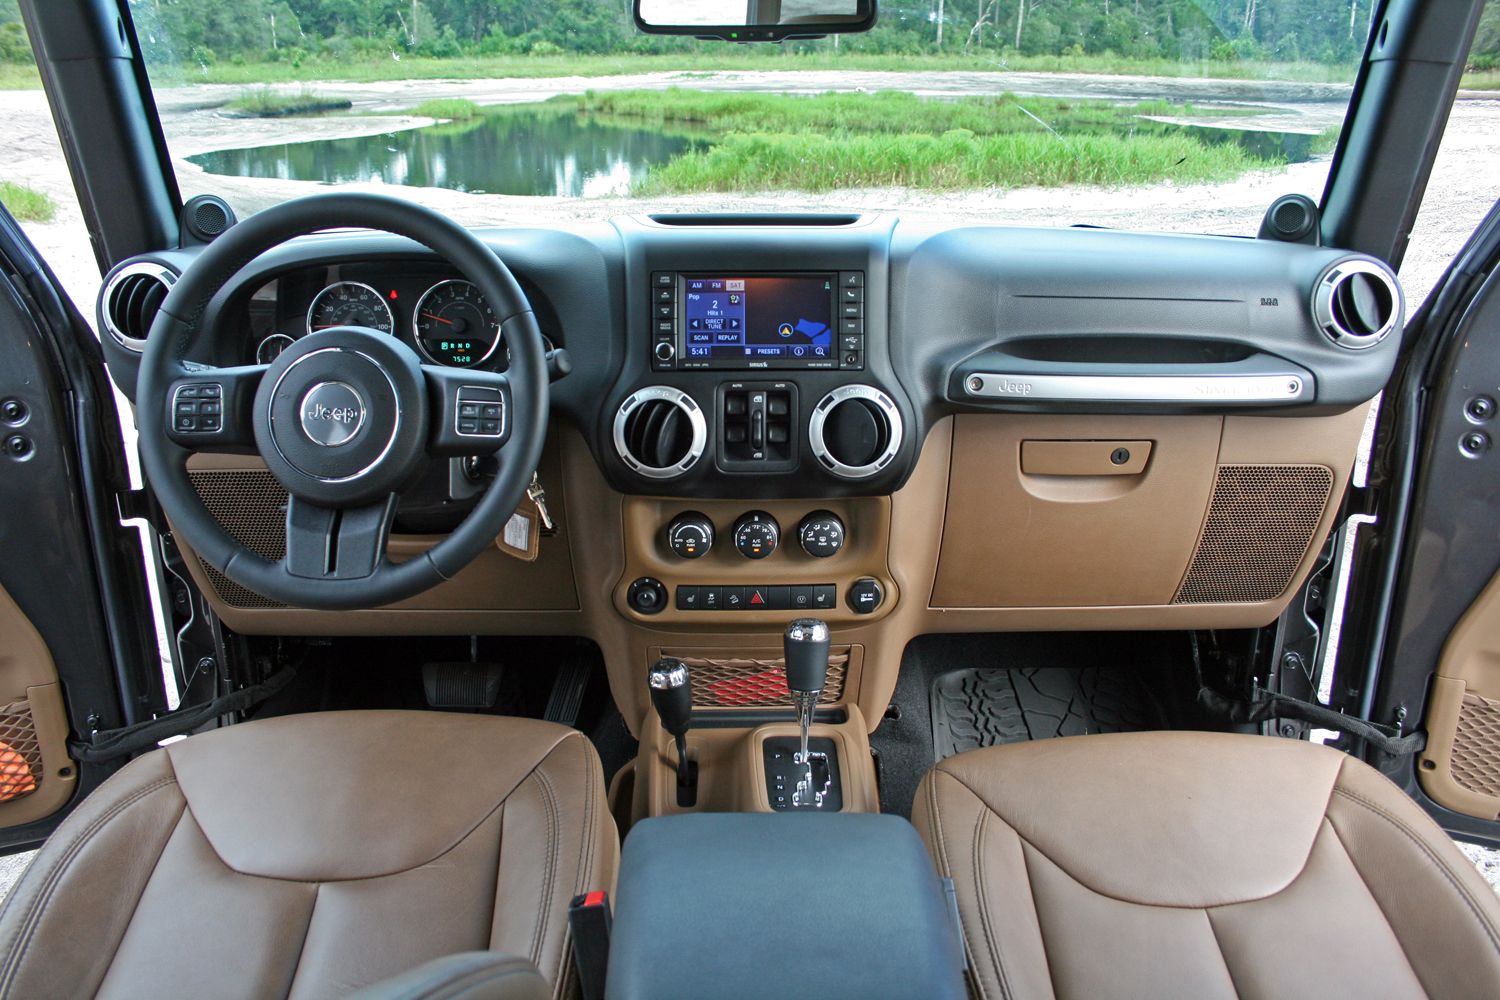 2014 Toyota 4Runner TRD Pro vs. Jeep Wrangler Unlimited